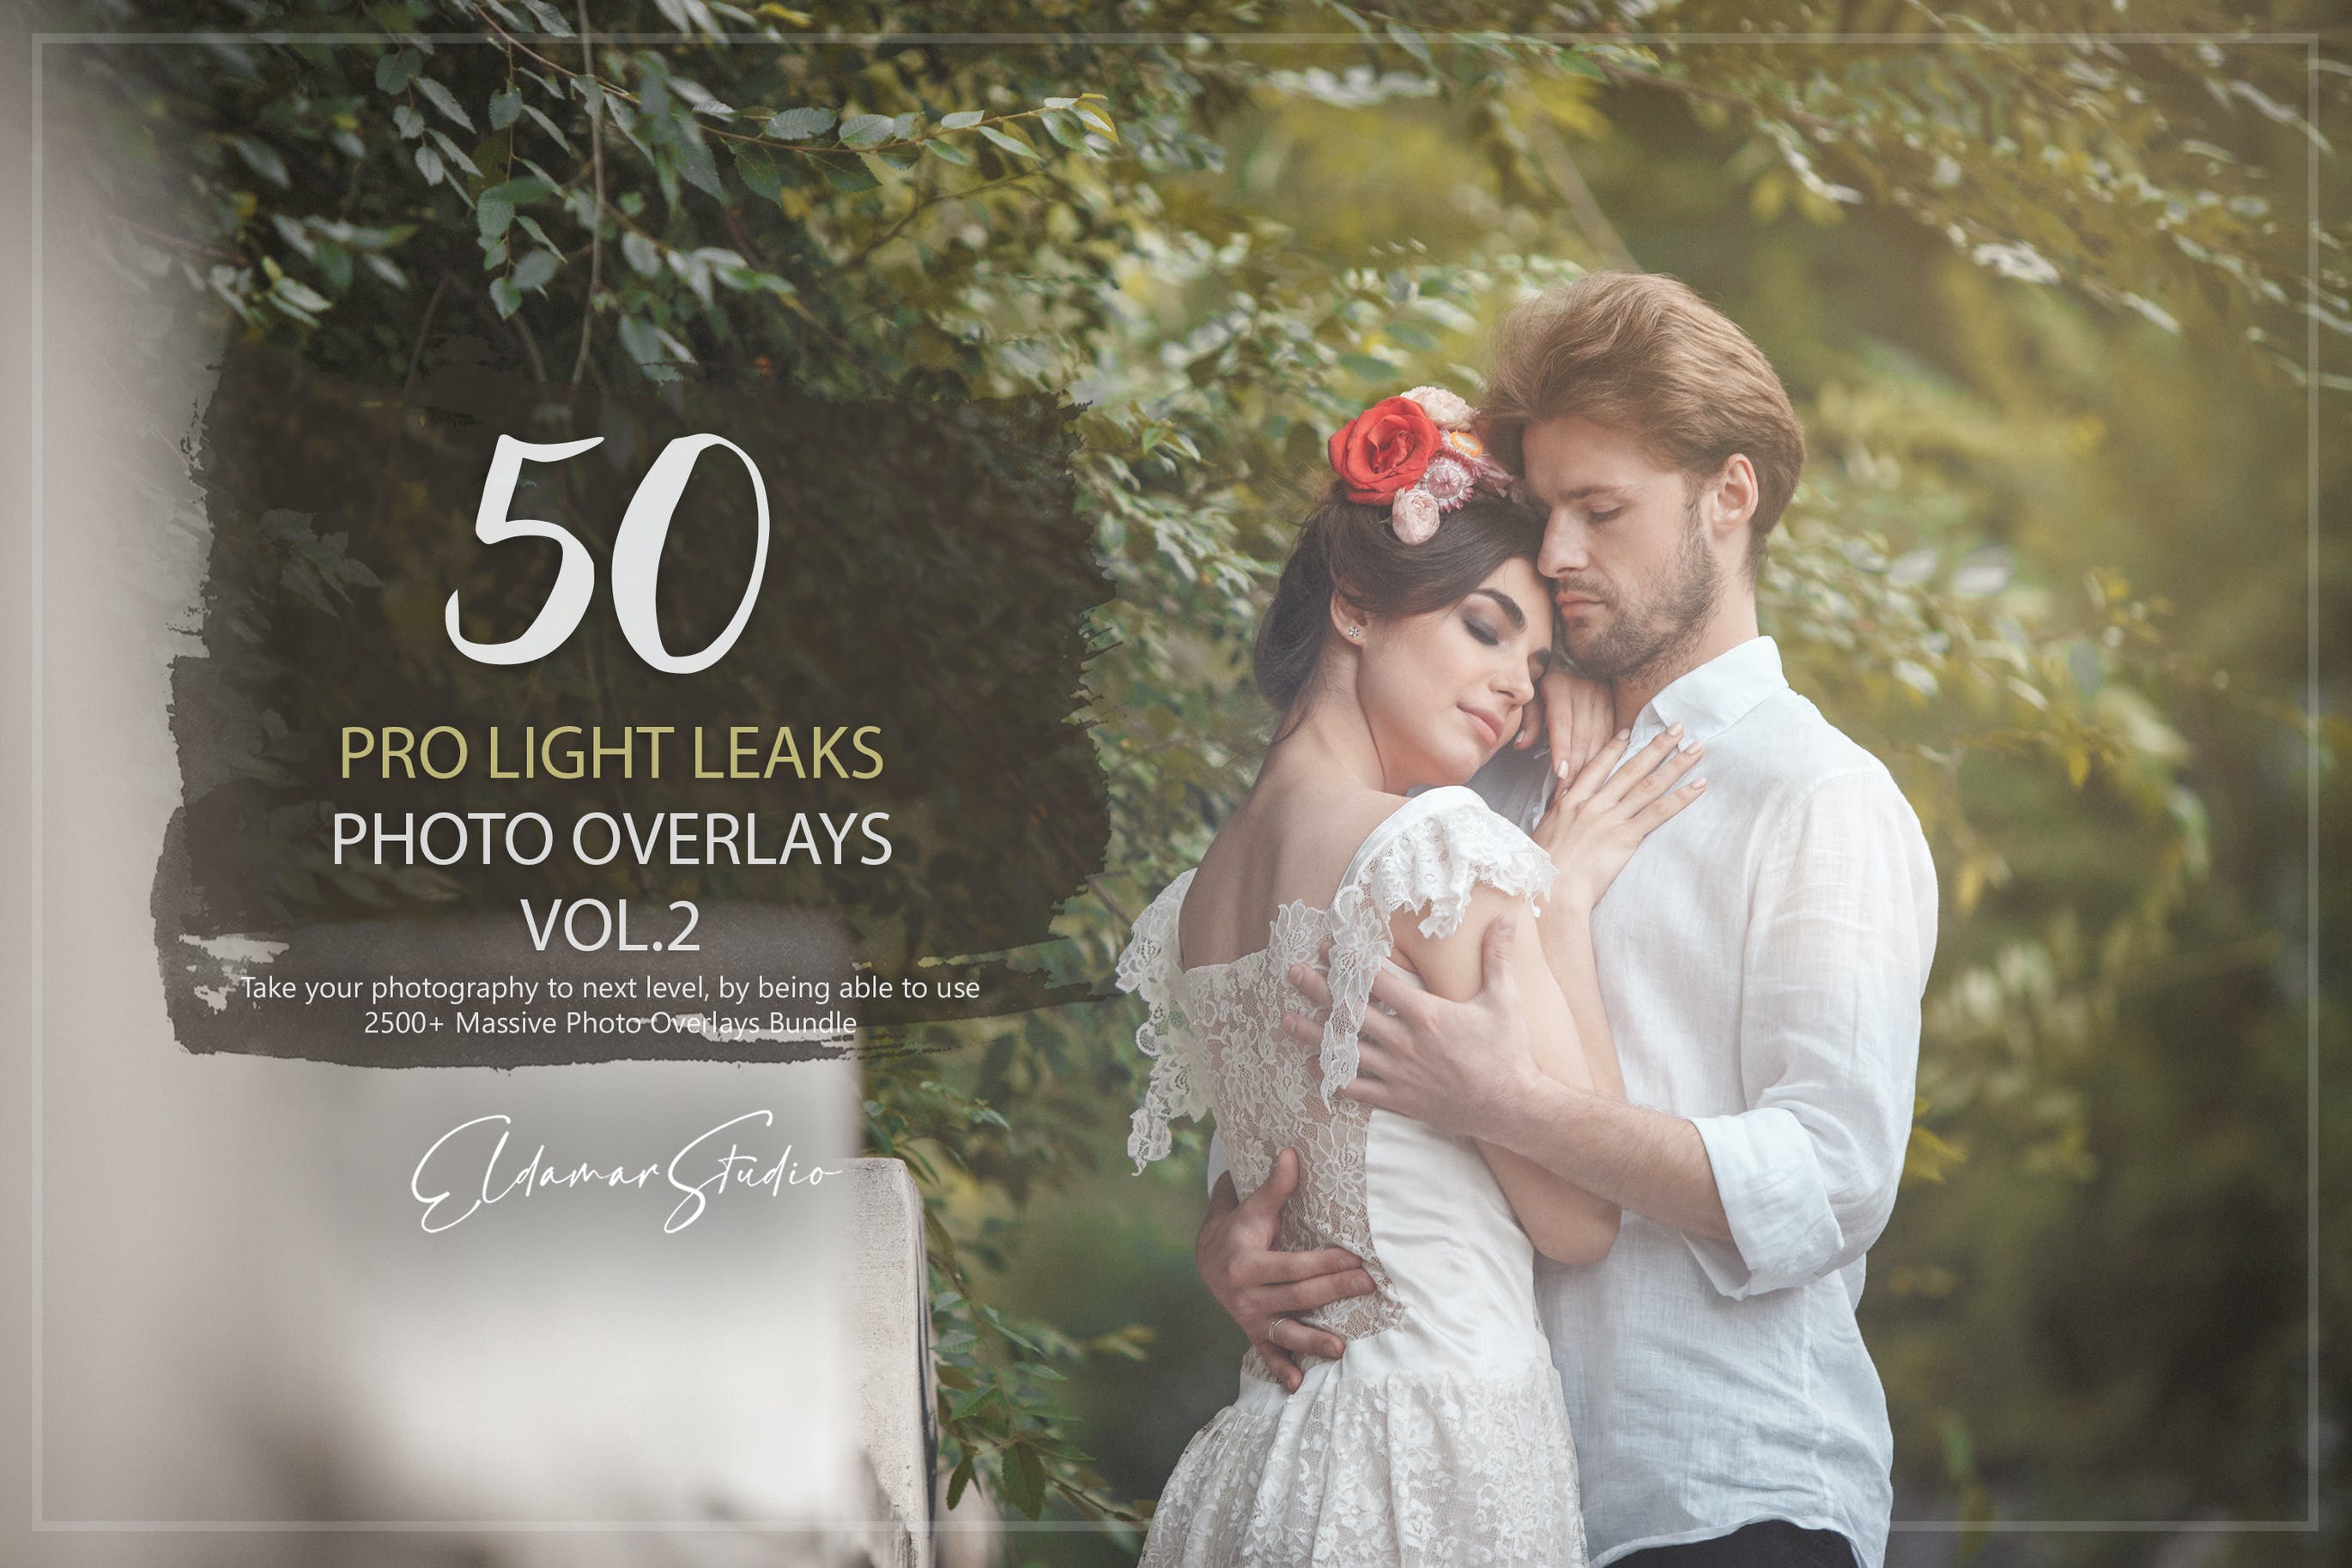 50个专业漏光效果照片叠层背景素材v2 50 Pro Light Leaks Photo Overlays – Vol. 2 图片素材 第1张